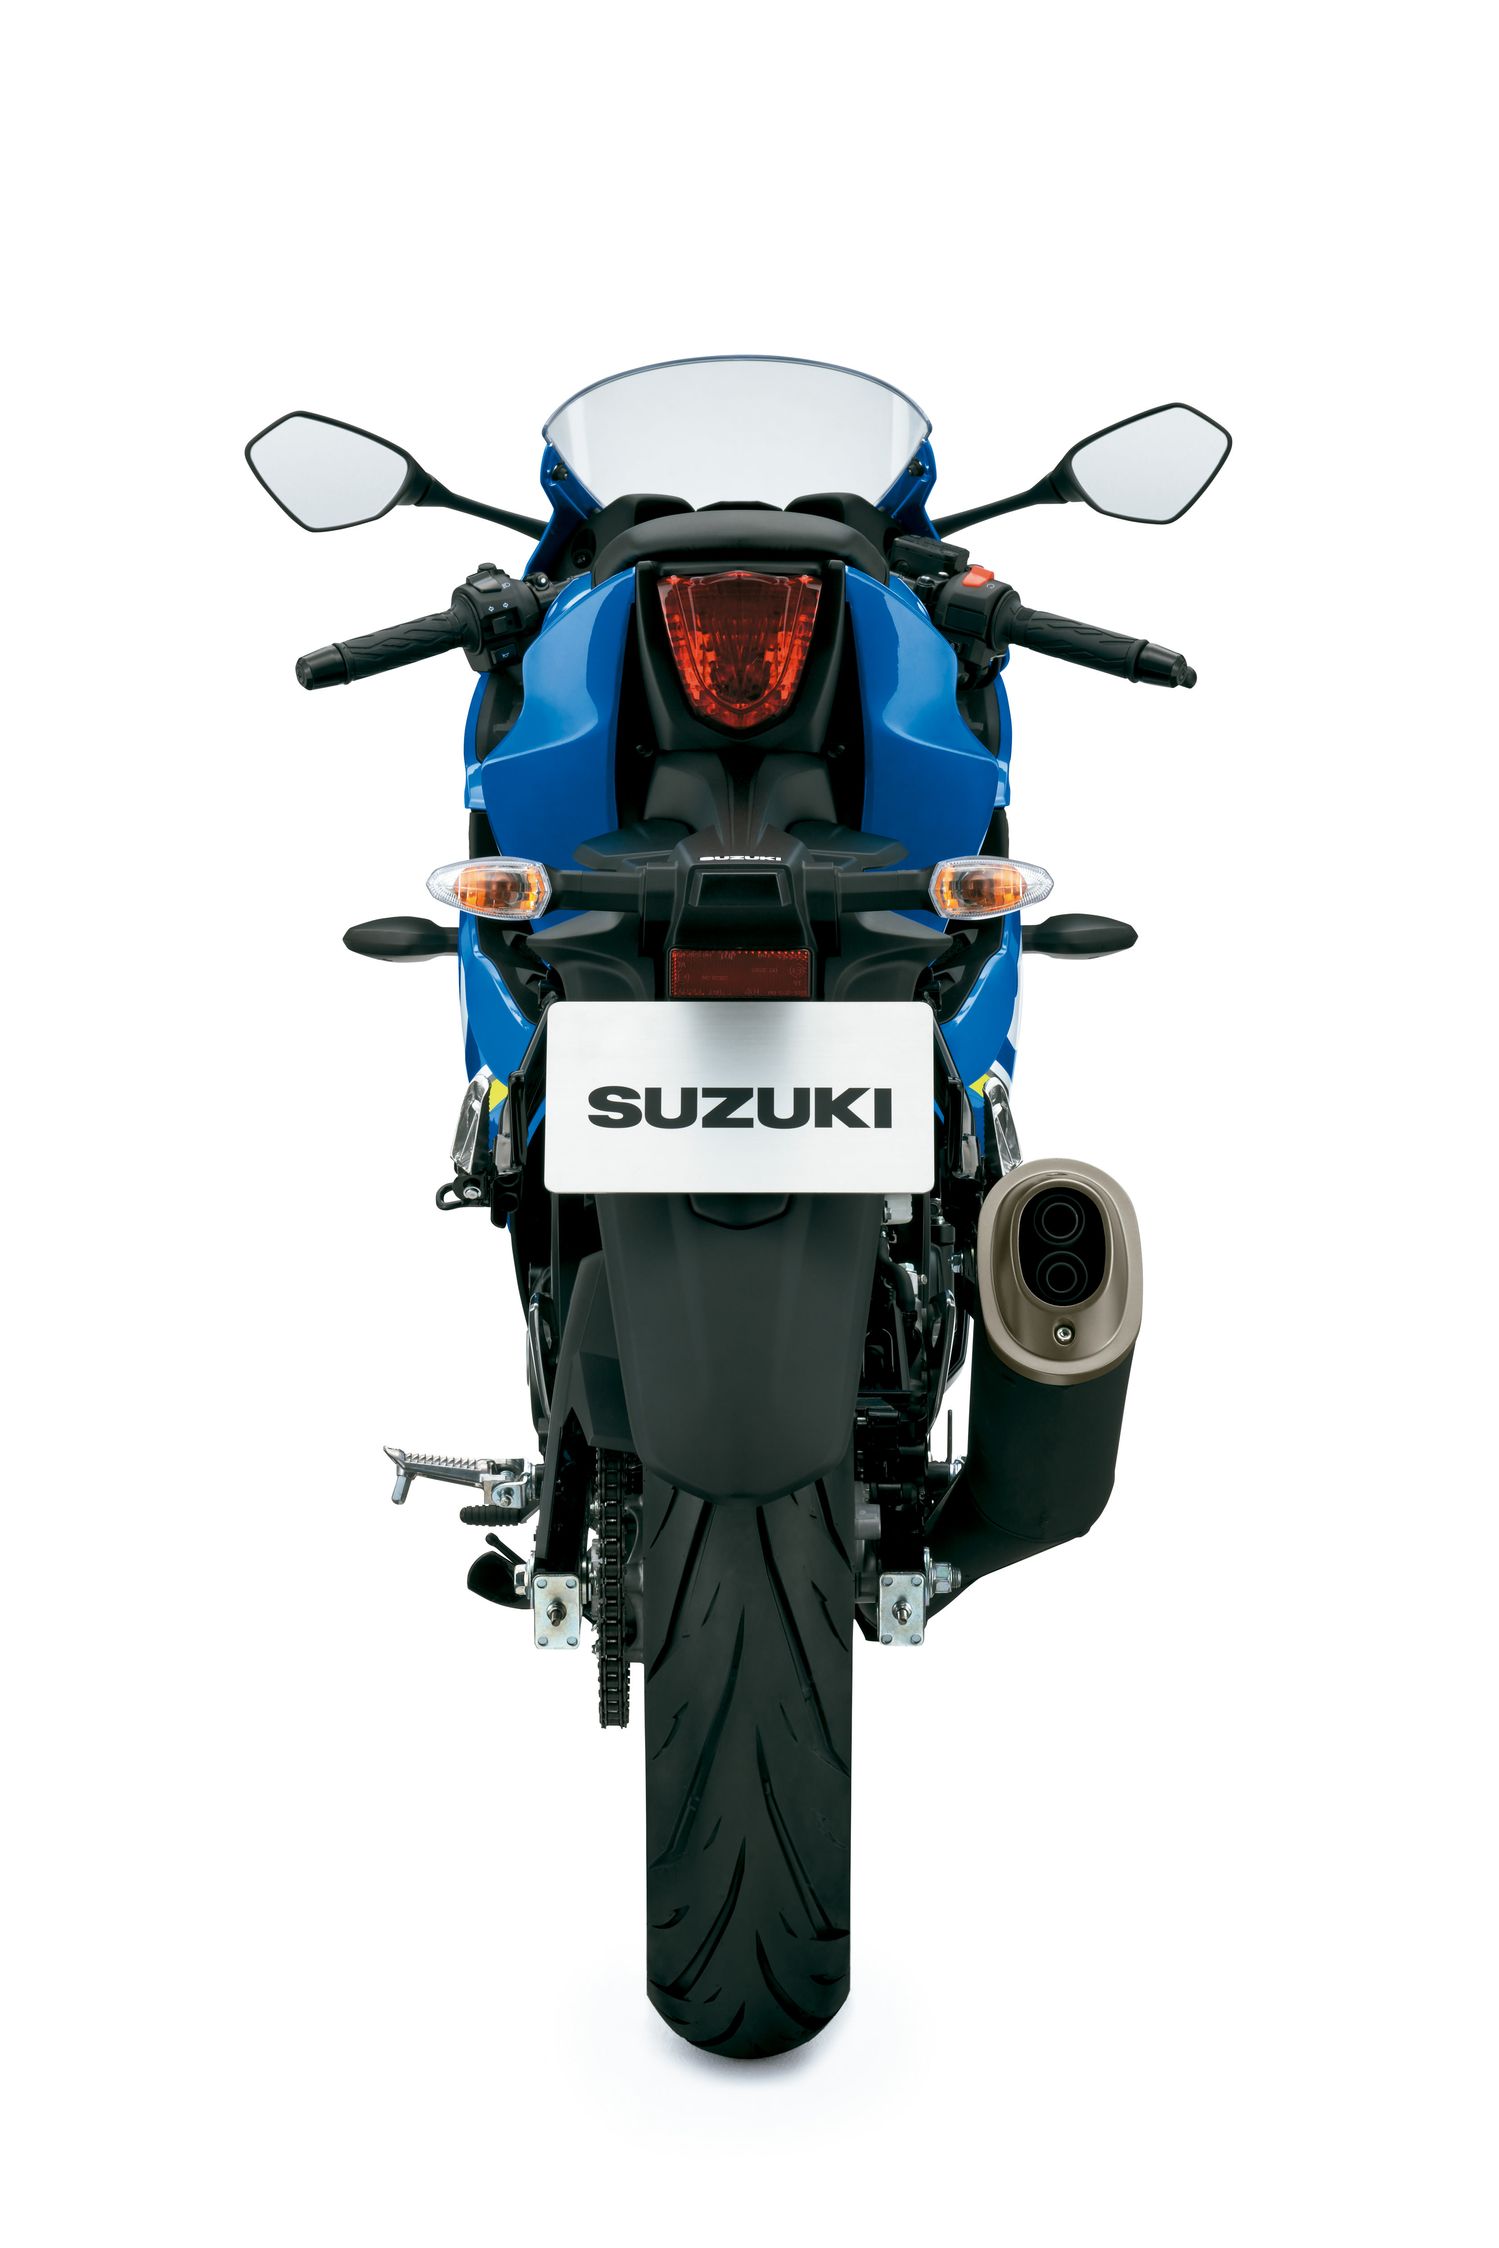 2018 Suzuki GSX-R150 Specifications